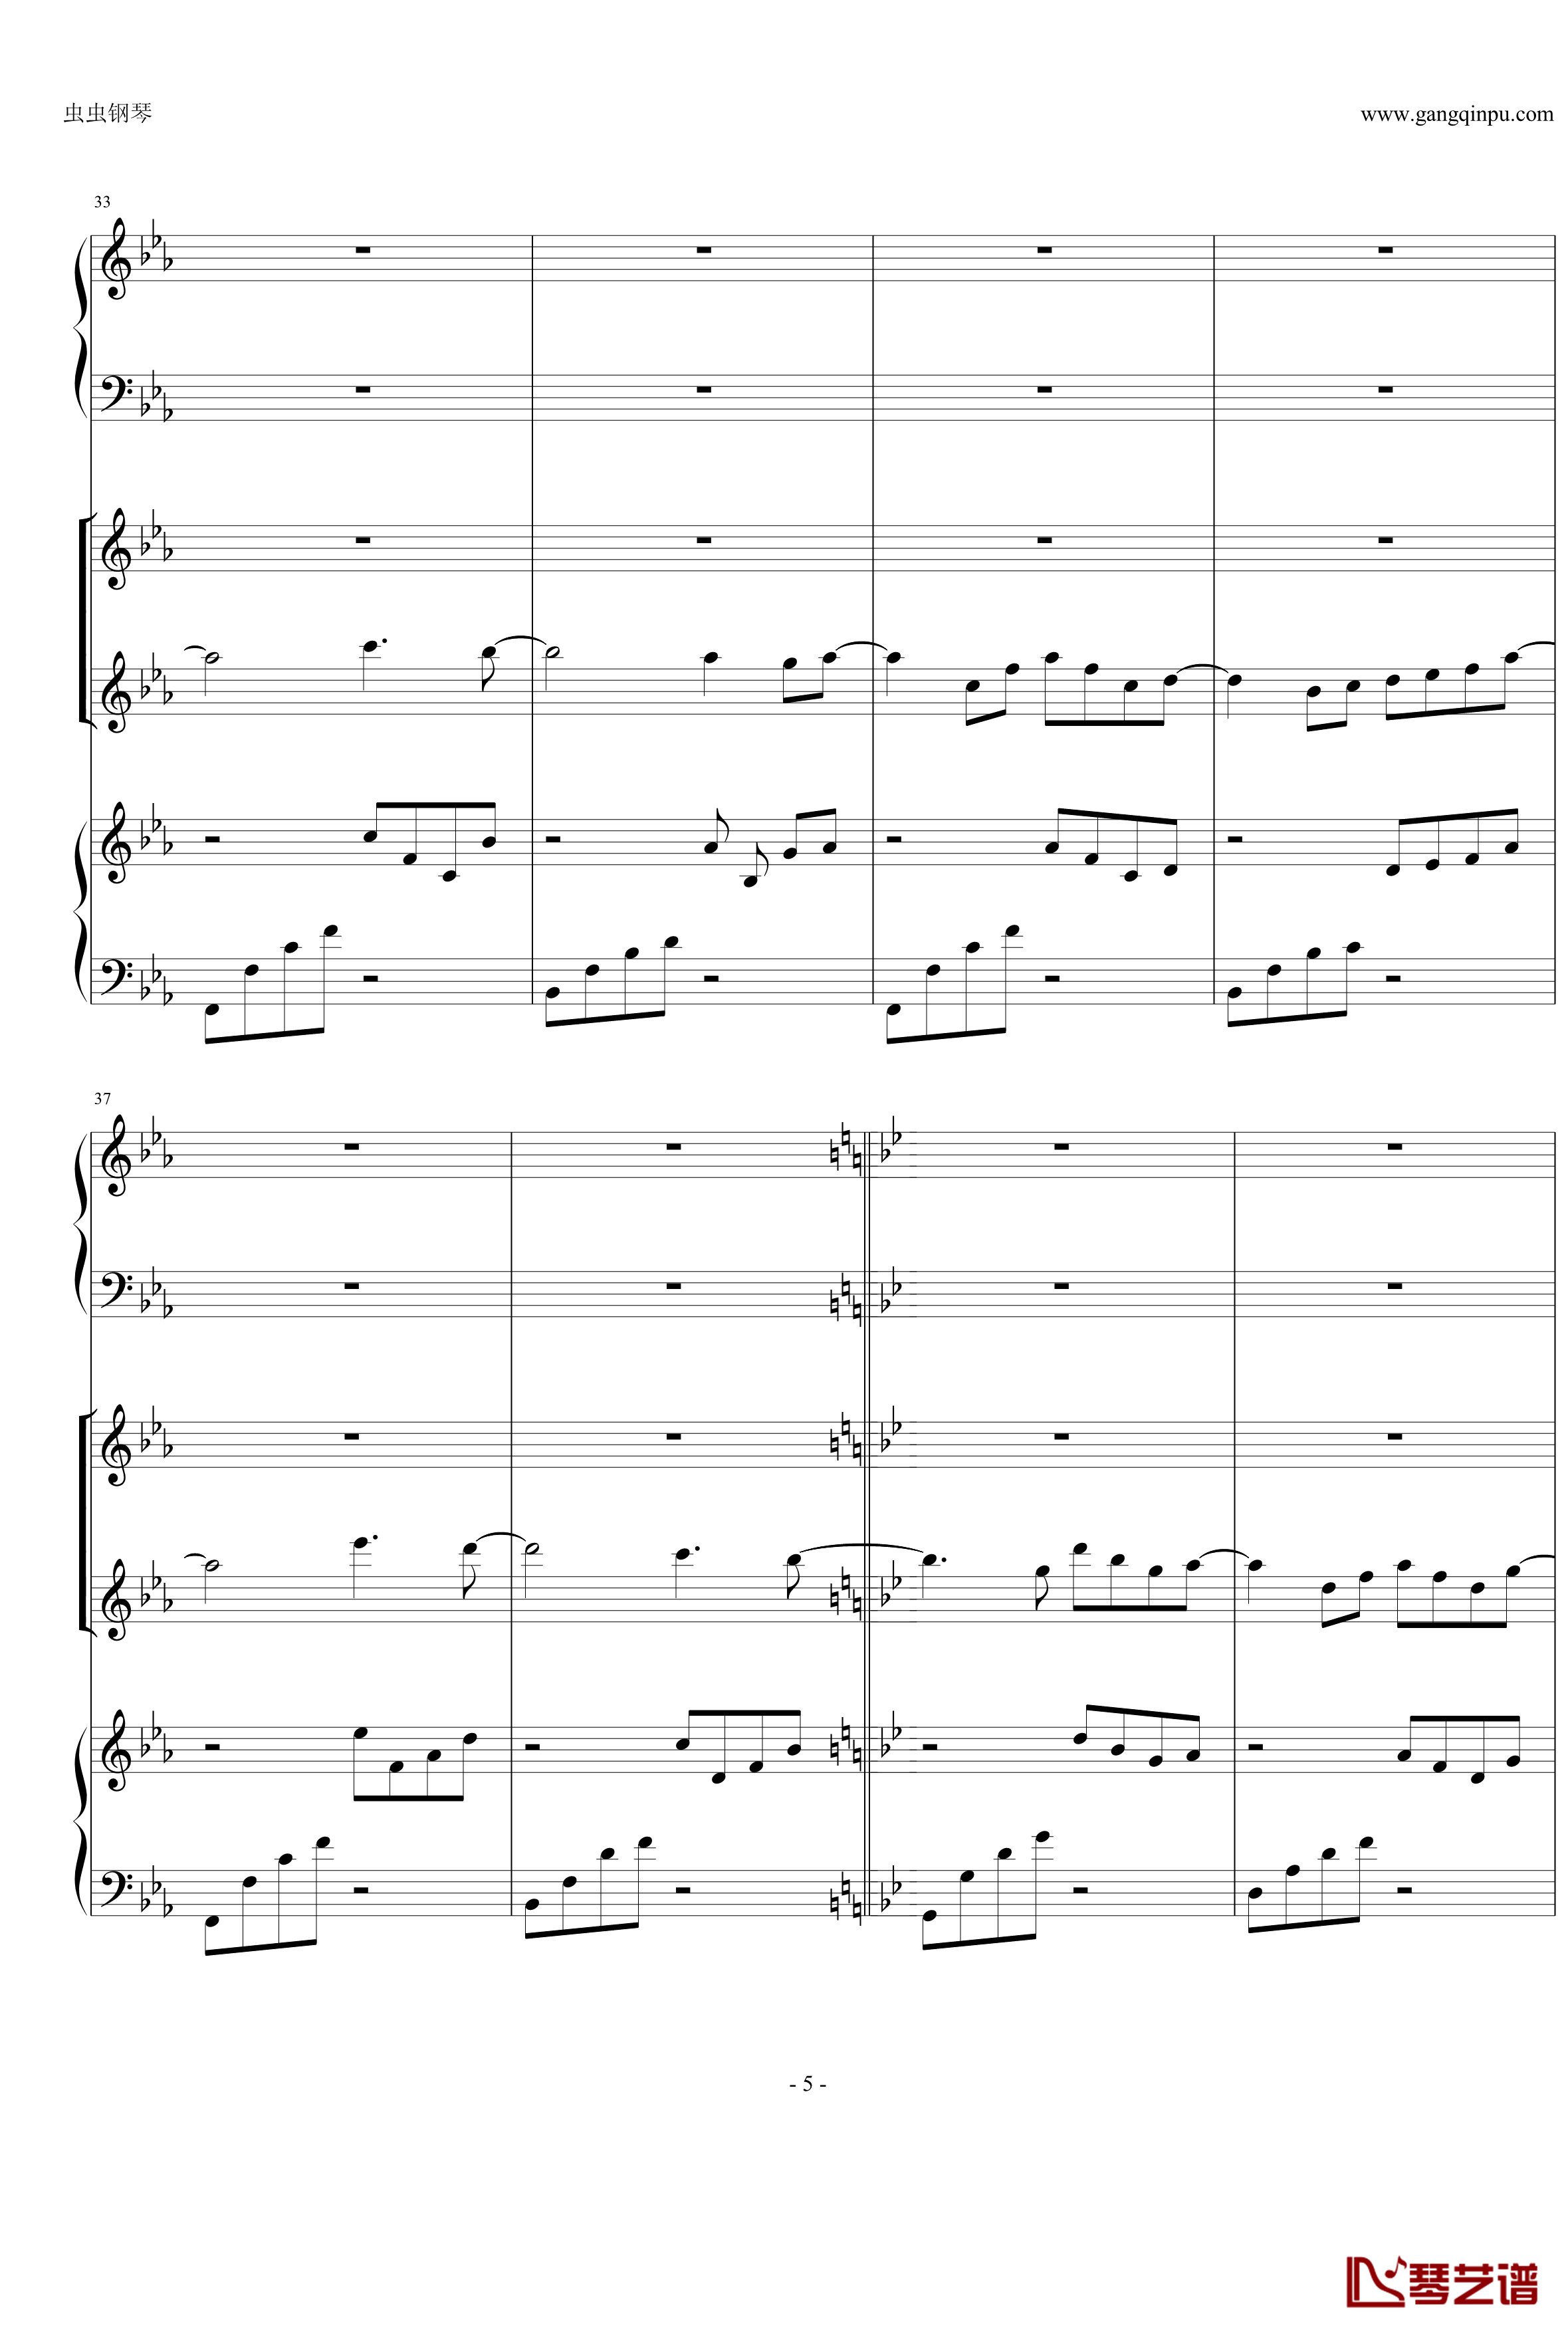 Anymusic钢琴谱-机械乐器乐-第三乐章5